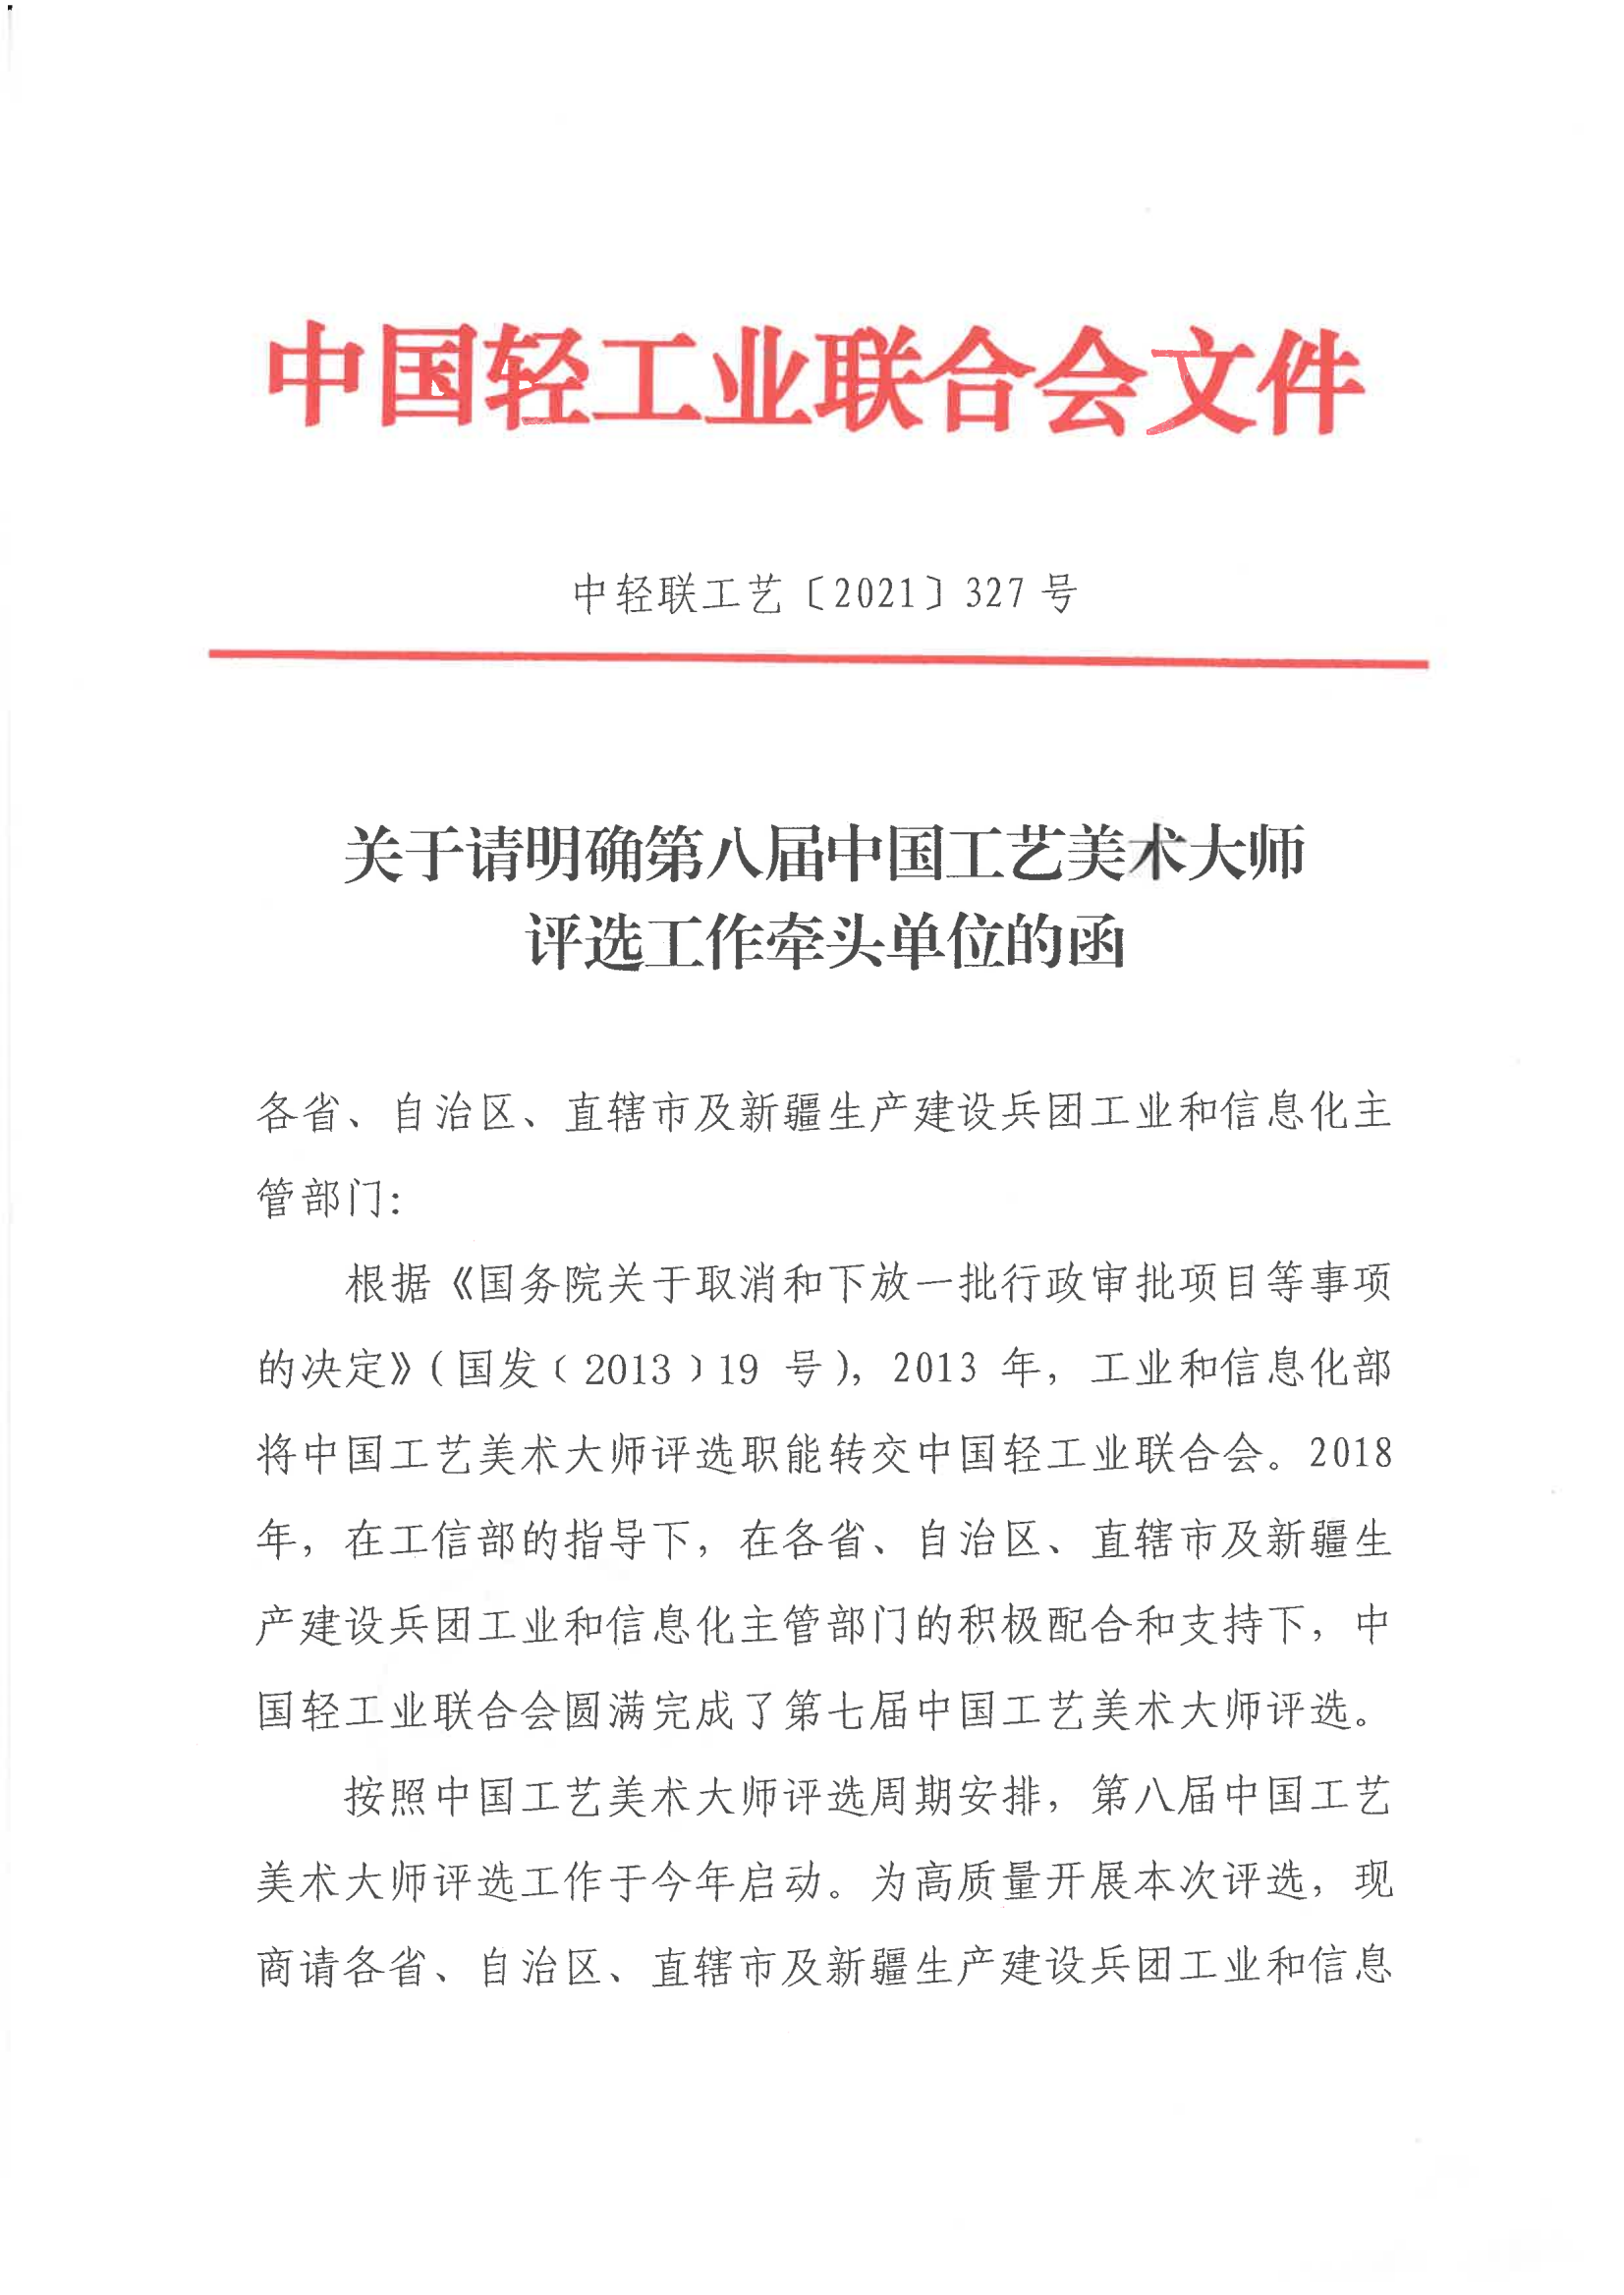 关于请明确第八届中国工艺美术大师评选工作牵头单位的函_00.png